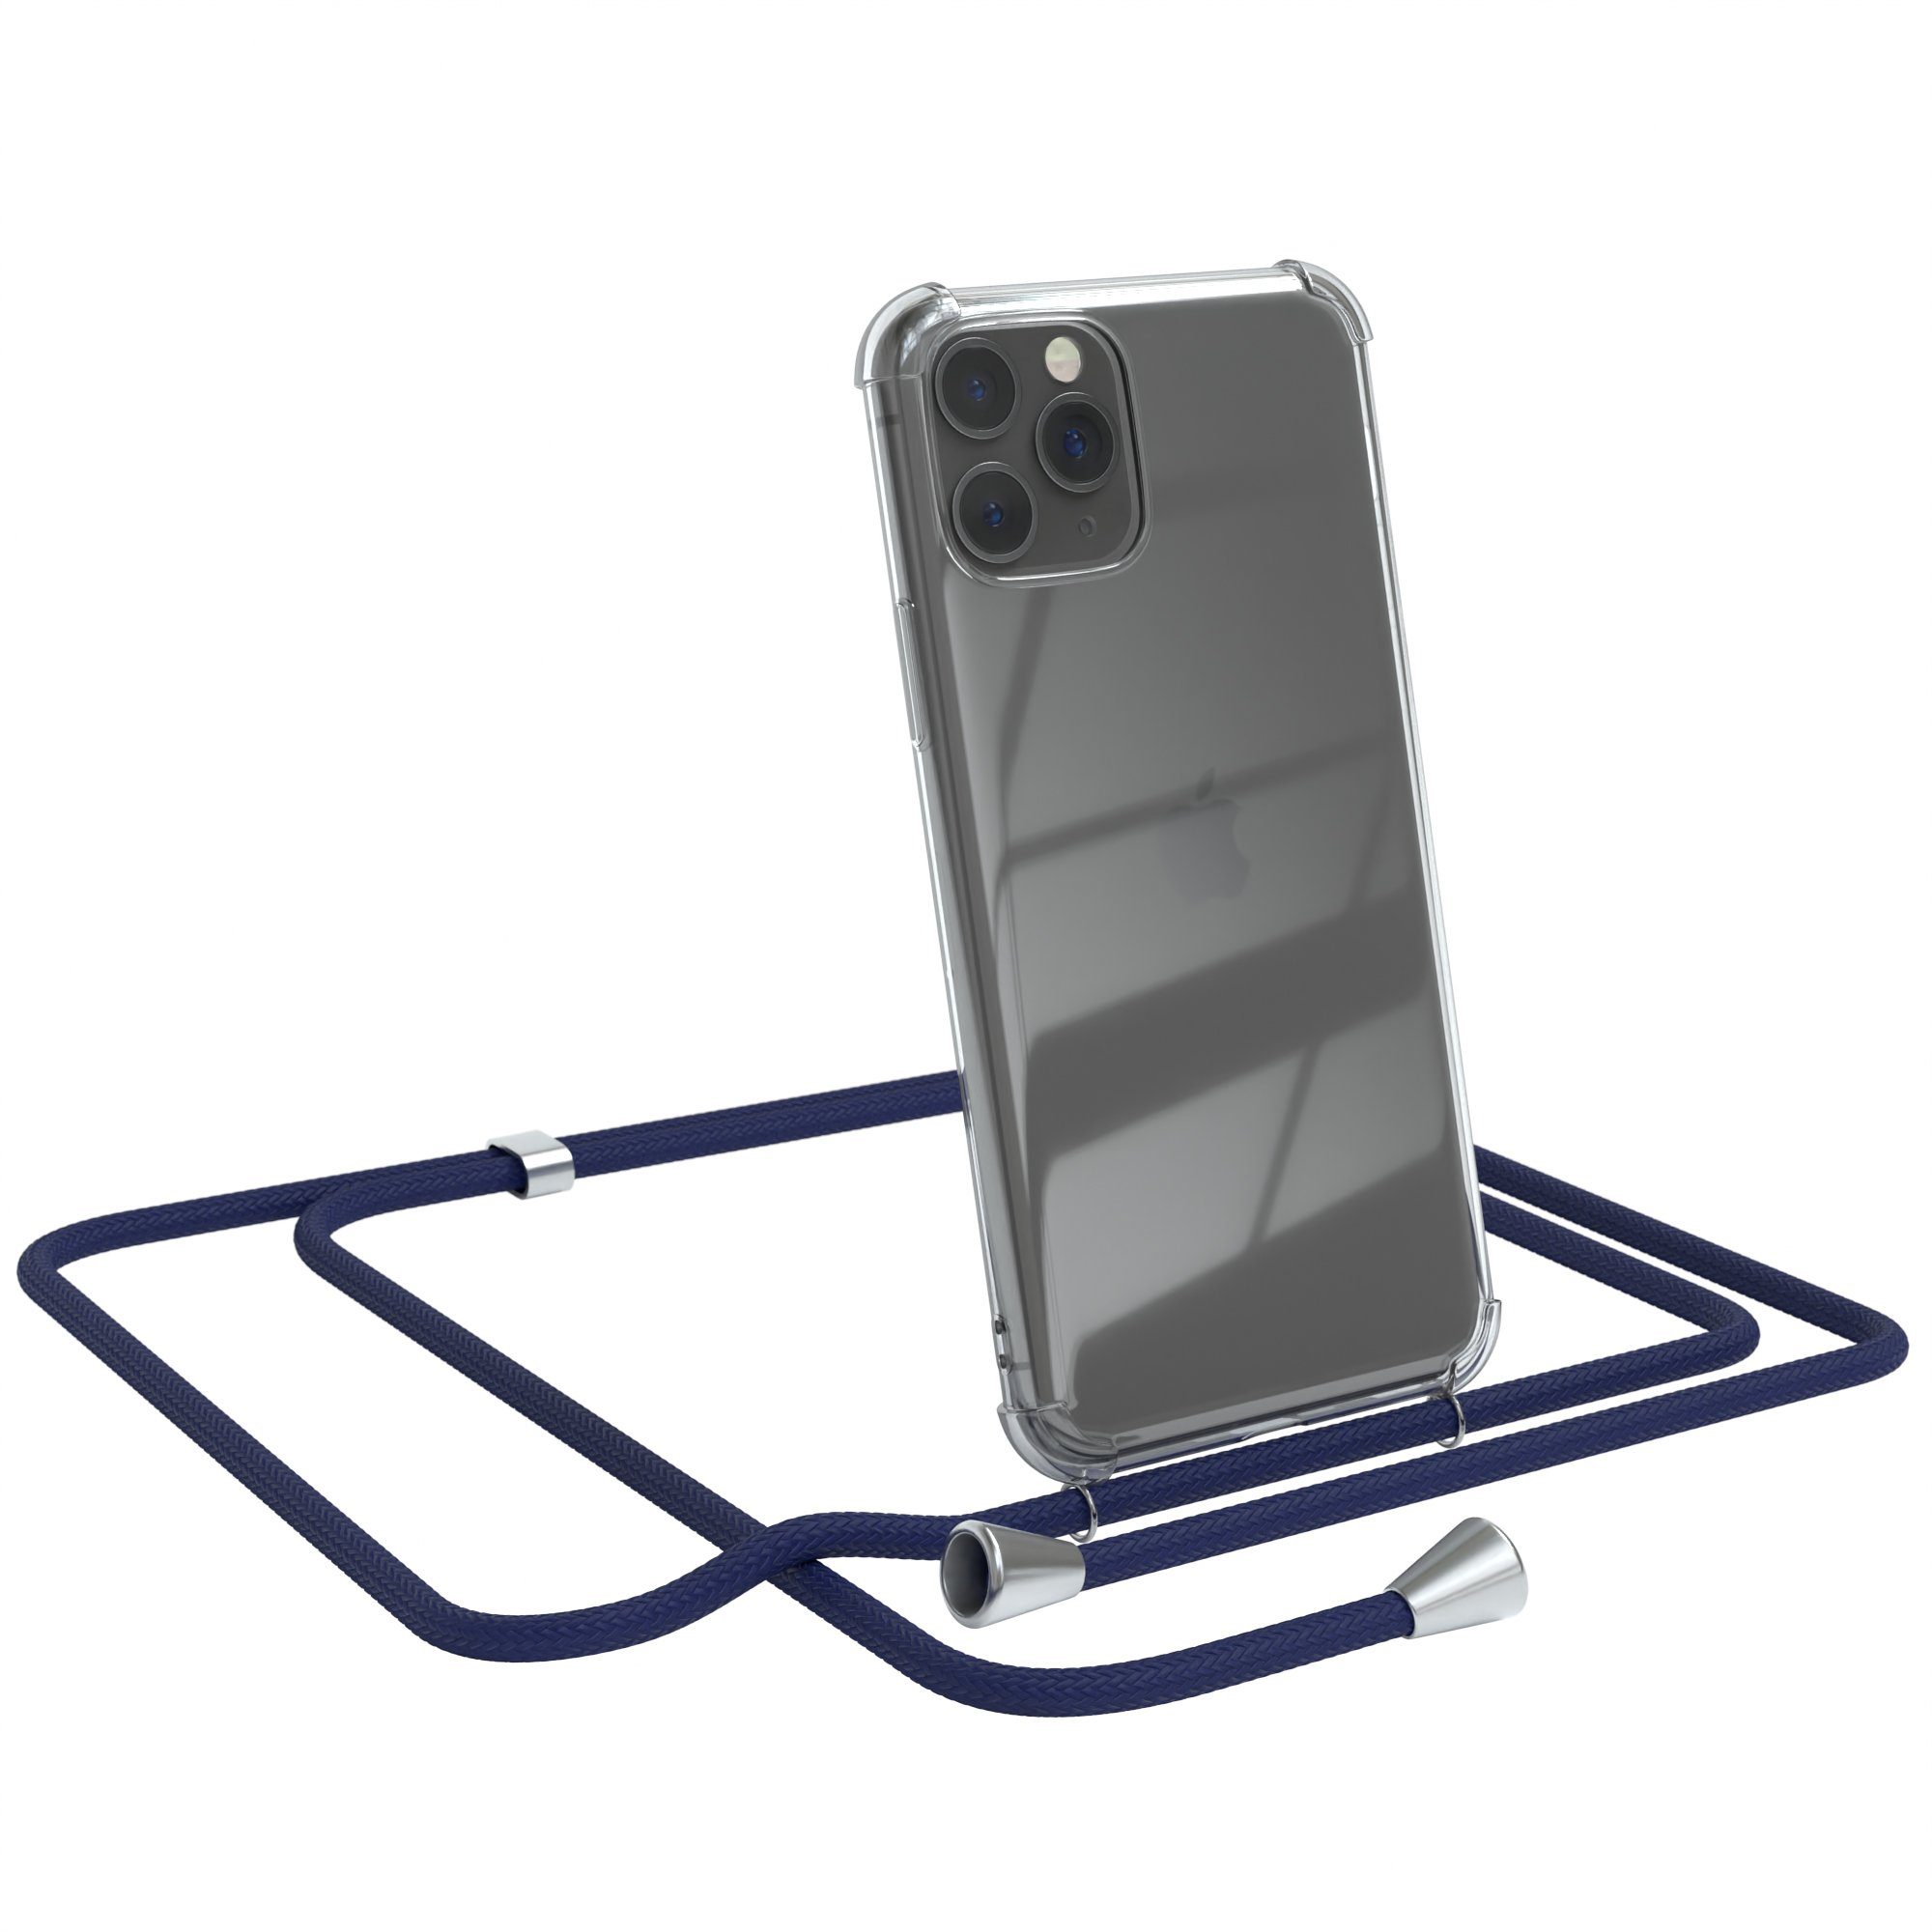 EAZY CASE Handykette Hülle mit Kette für Apple iPhone 11 Pro 5,8 Zoll, Kette zum Umhängen Backcover Etui Schutzhülle Hülle mit Band Case Blau